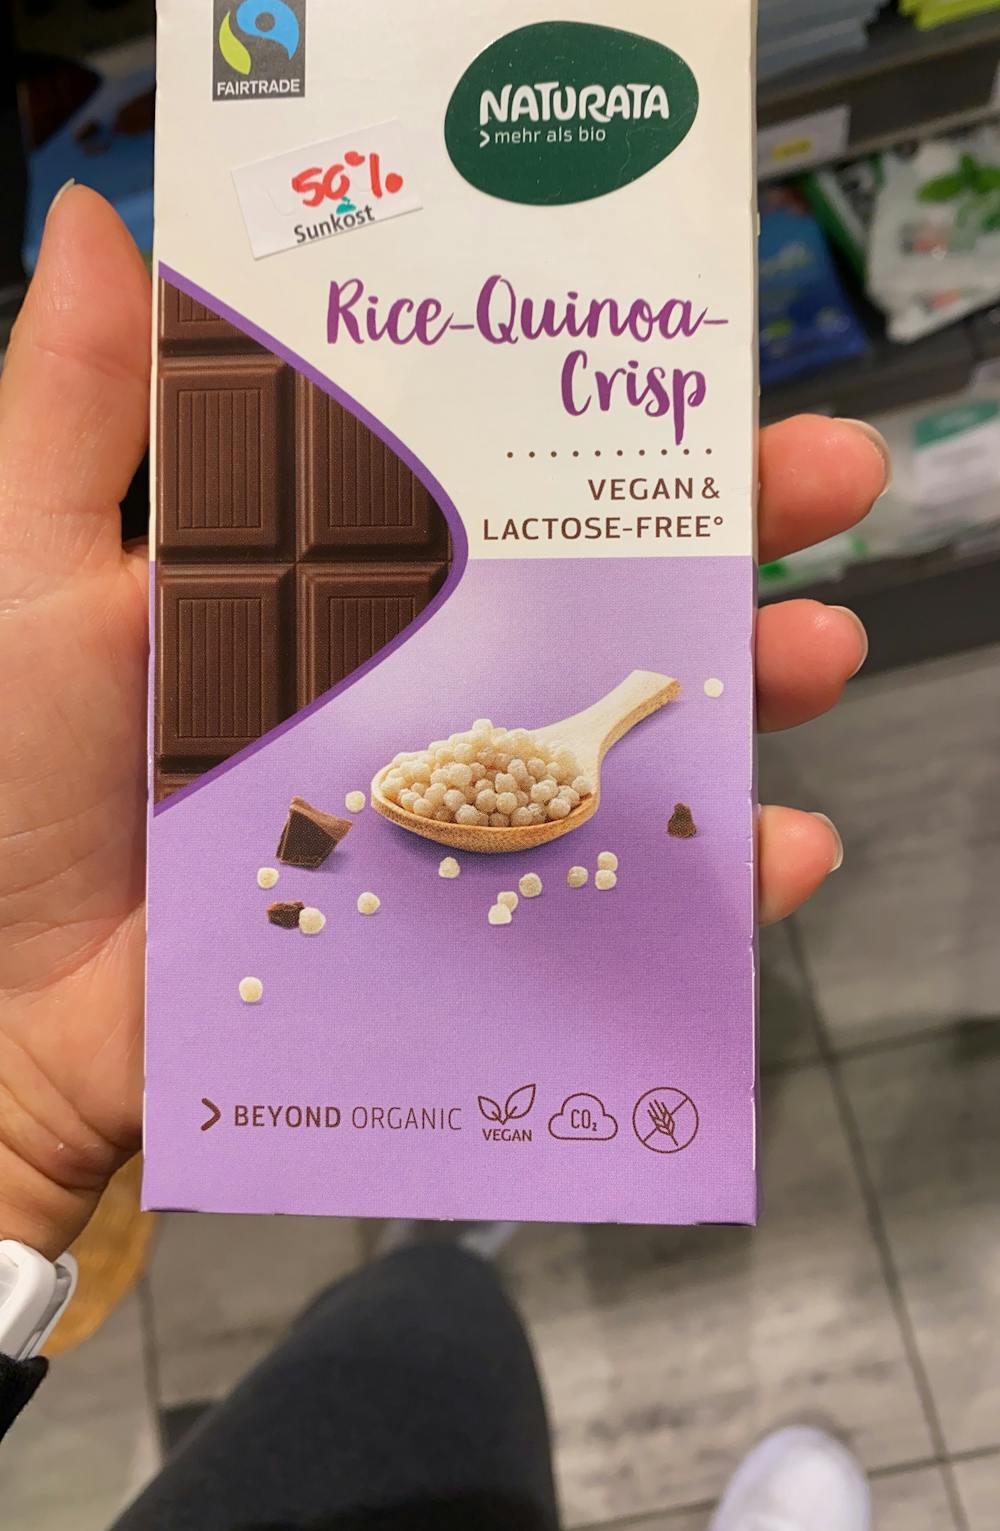 Rice-quinoa-crisp, Naturata 